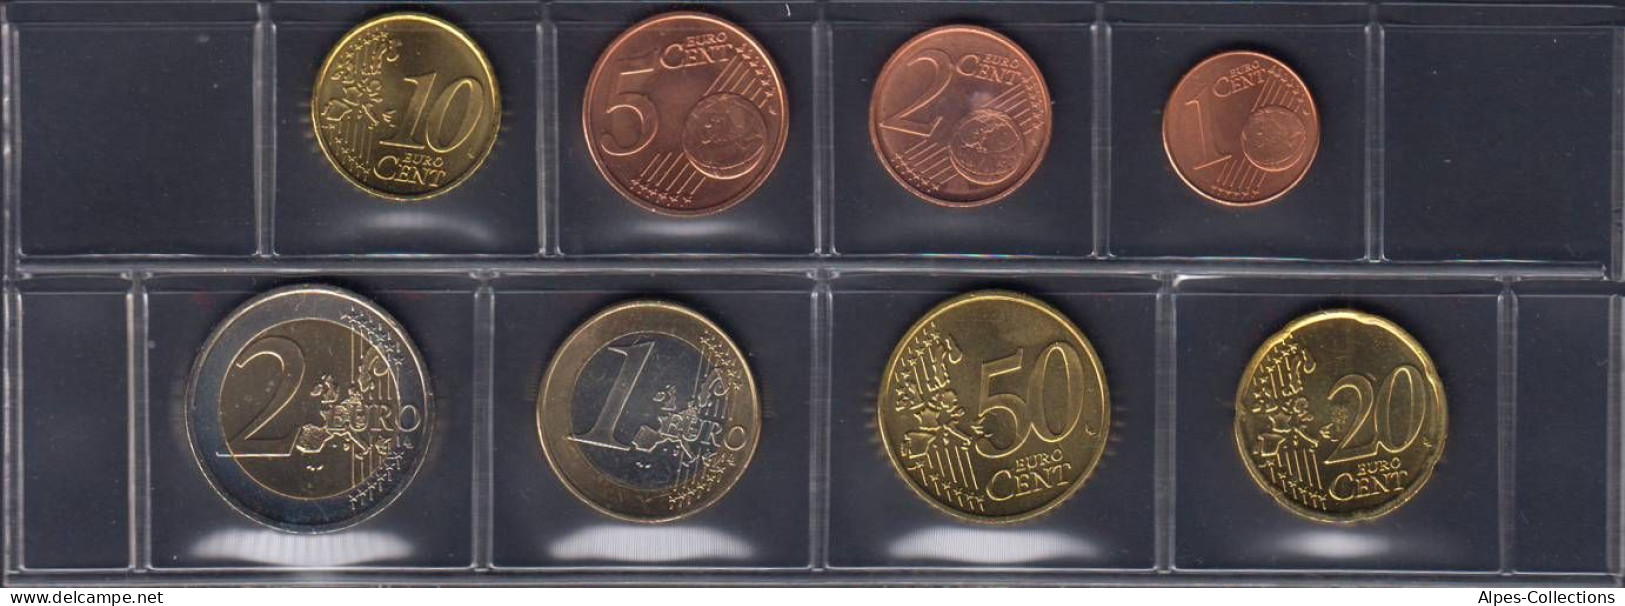 AUX2002.2 - SERIE AUTRICHE - 2002 - 1 Cent à 2 Euros - Oostenrijk